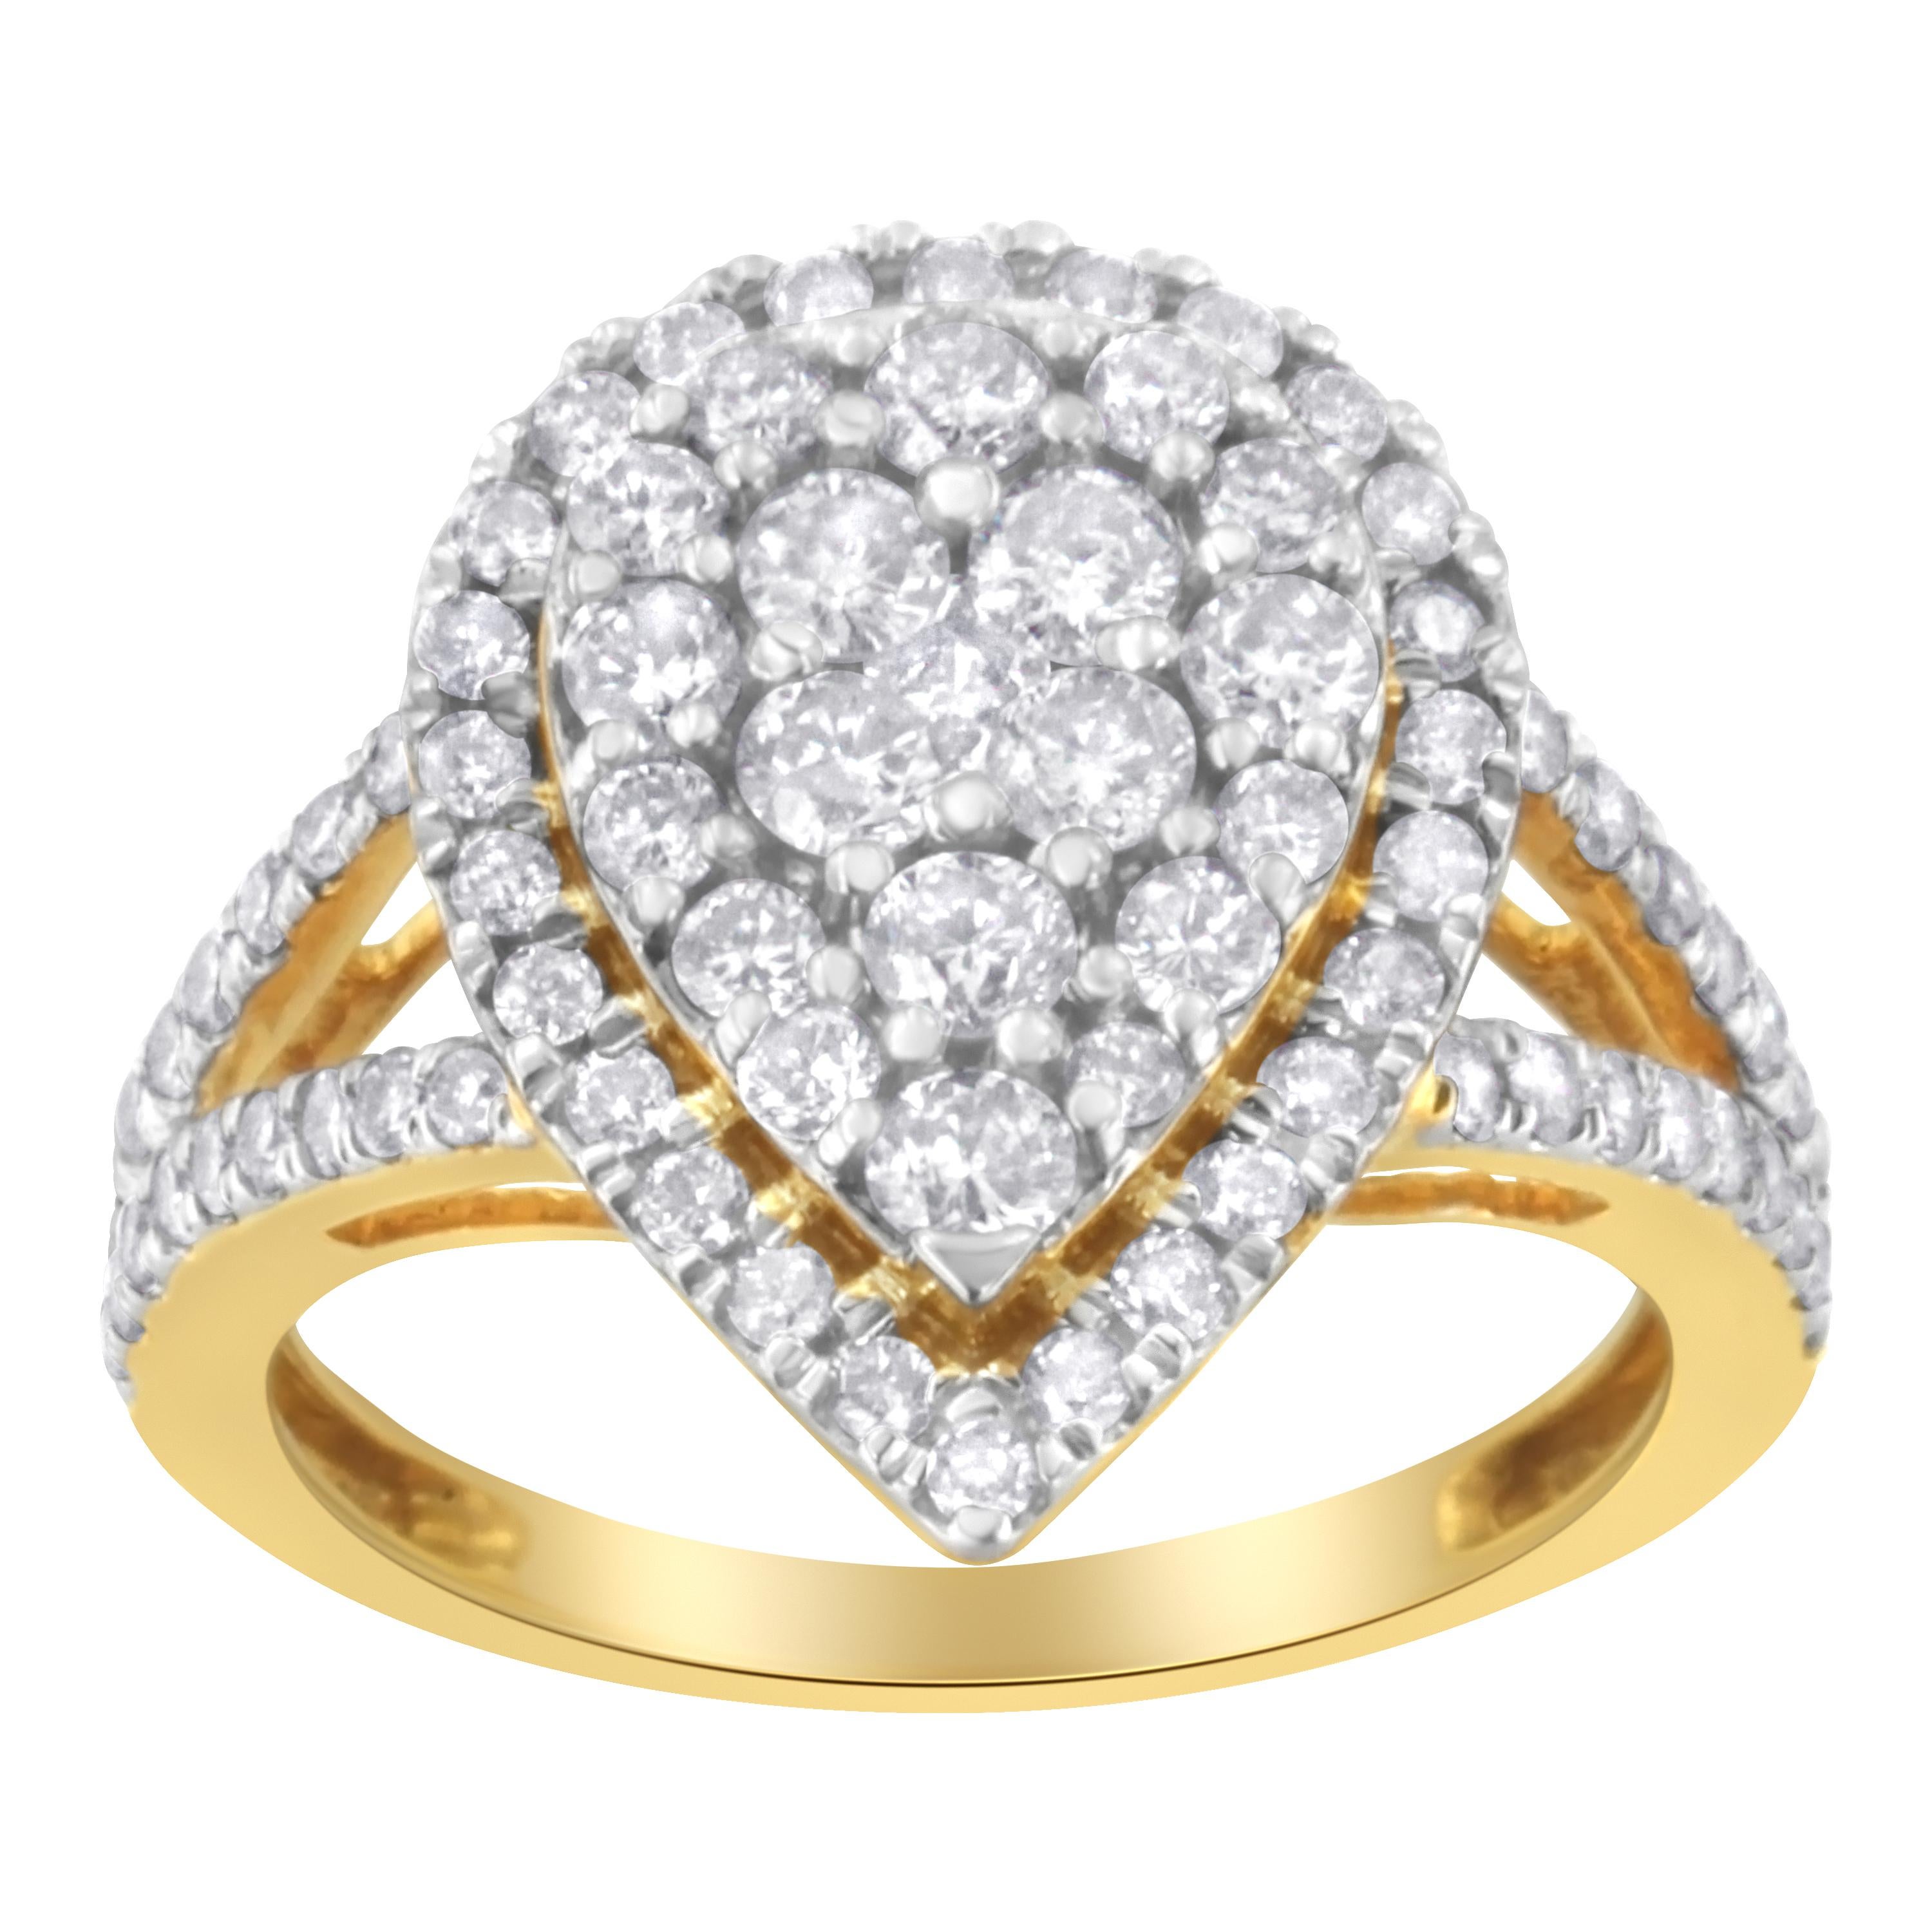 Ein kühner Silber- und Diamant-Cluster-Ring. Dieser birnenförmige Ring ist mit 80 Diamanten im Rundschliff in einer Zackenfassung mit einem Gesamtgewicht von 1 1/2 Karat besetzt. Die Diamanten sind in vergoldetes Sterlingsilber